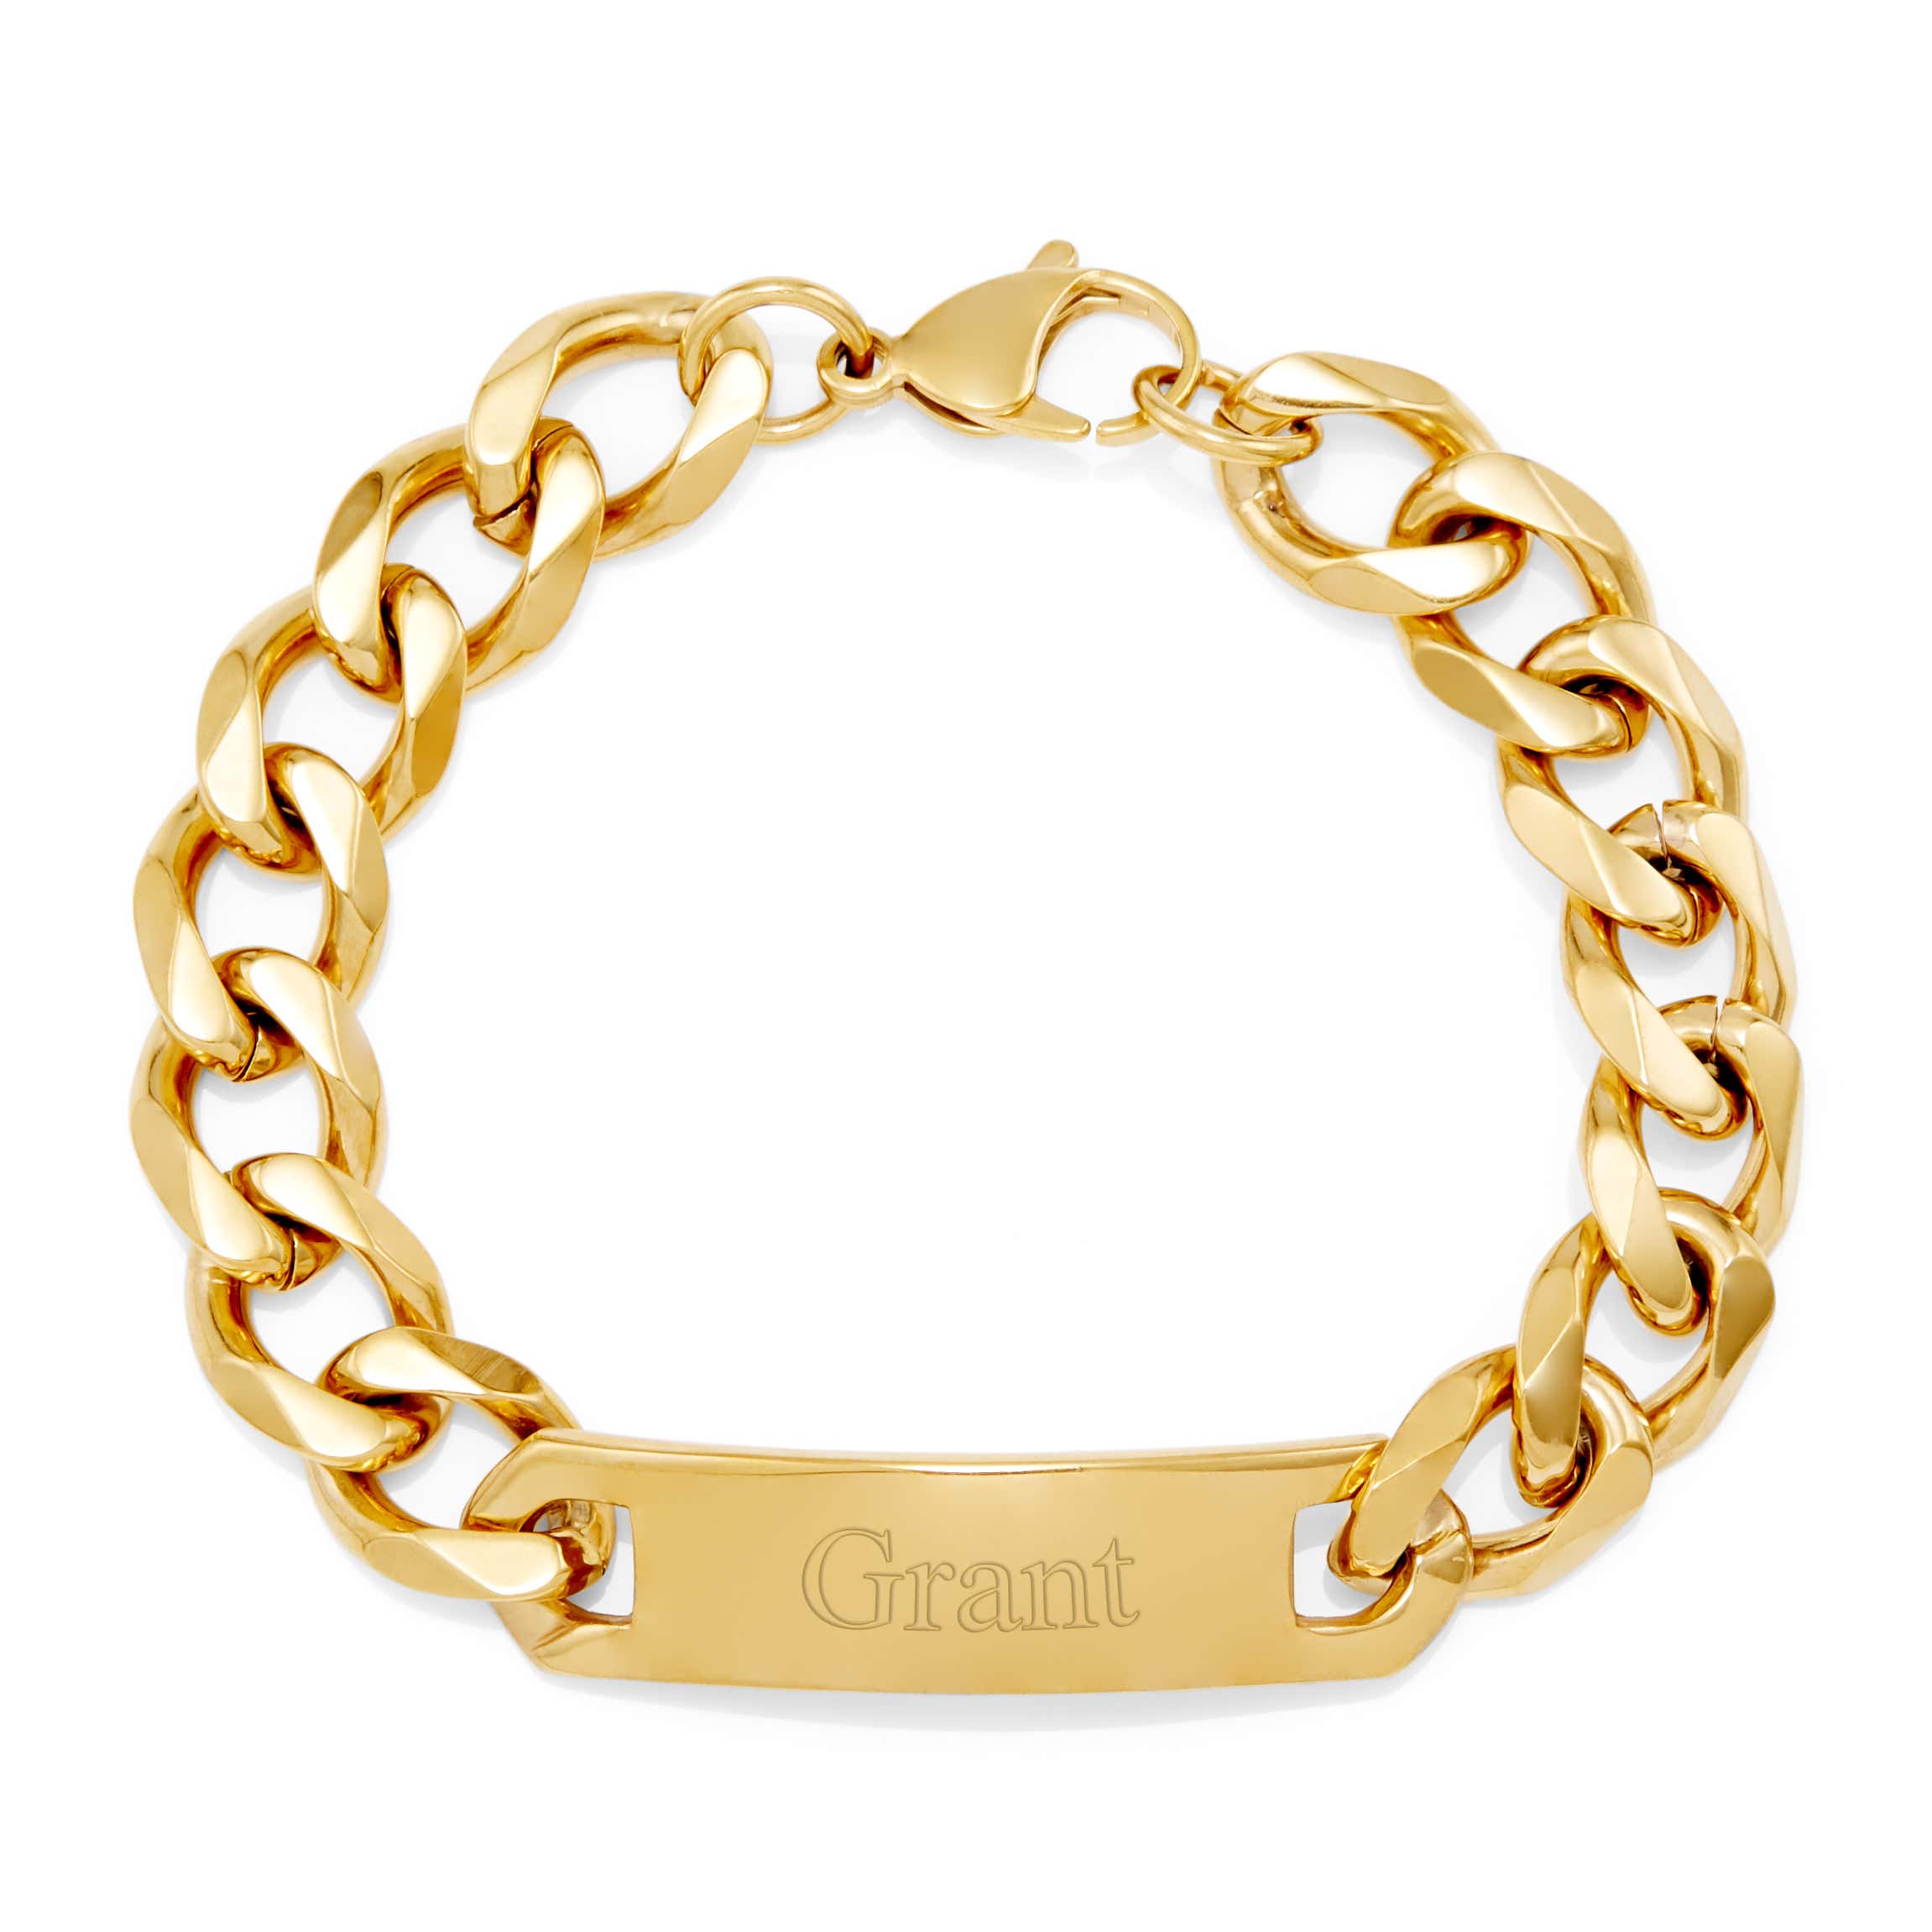 Personalize Bar Bracelet, Custom Name Bracelet, Gold Men Bracelet, Engraved Bracelet, Gift for Men, Men's Custom Bracelet, Father's Day Gift